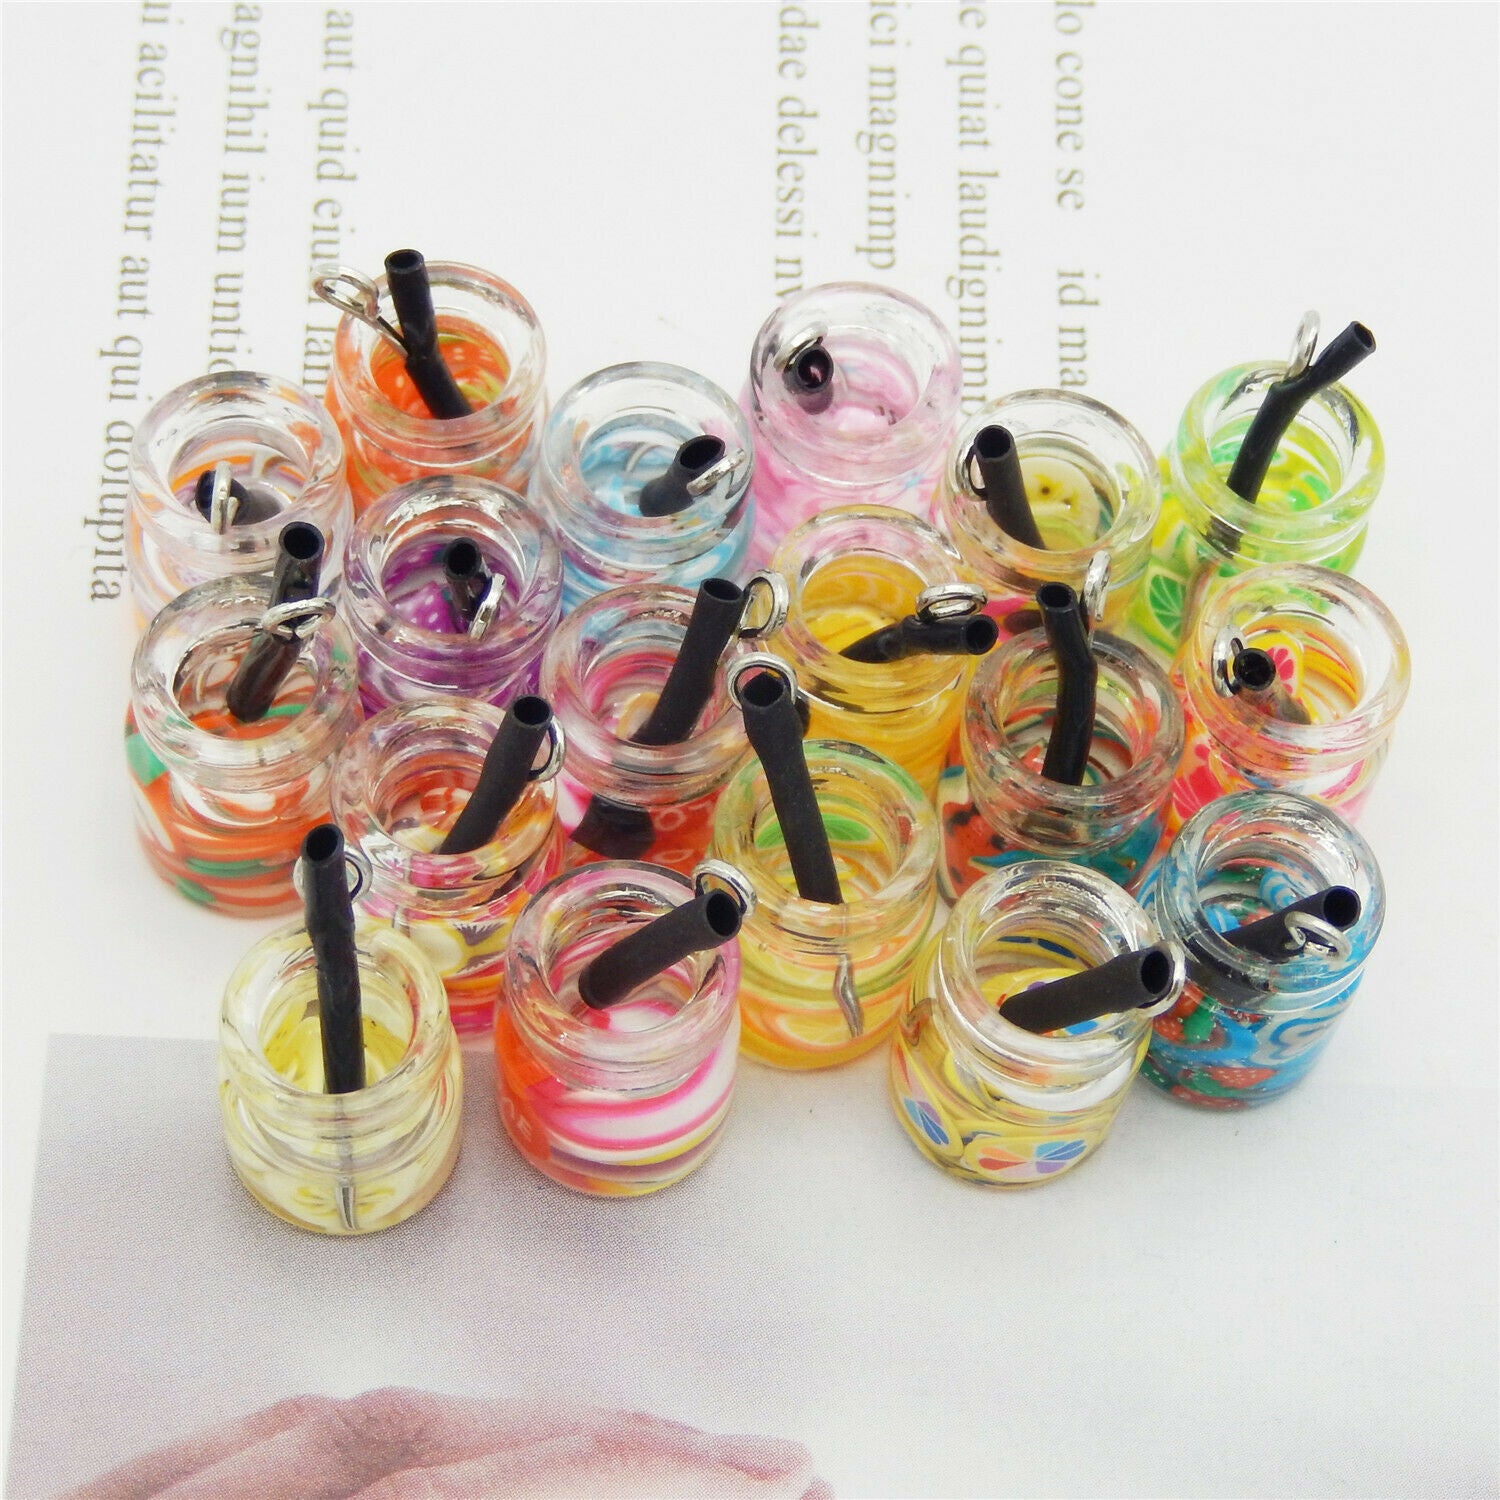 Wholesale Multi-Color Mixed Fruit Juice Glass Bottle Pendant Charms Crafts 20pcs